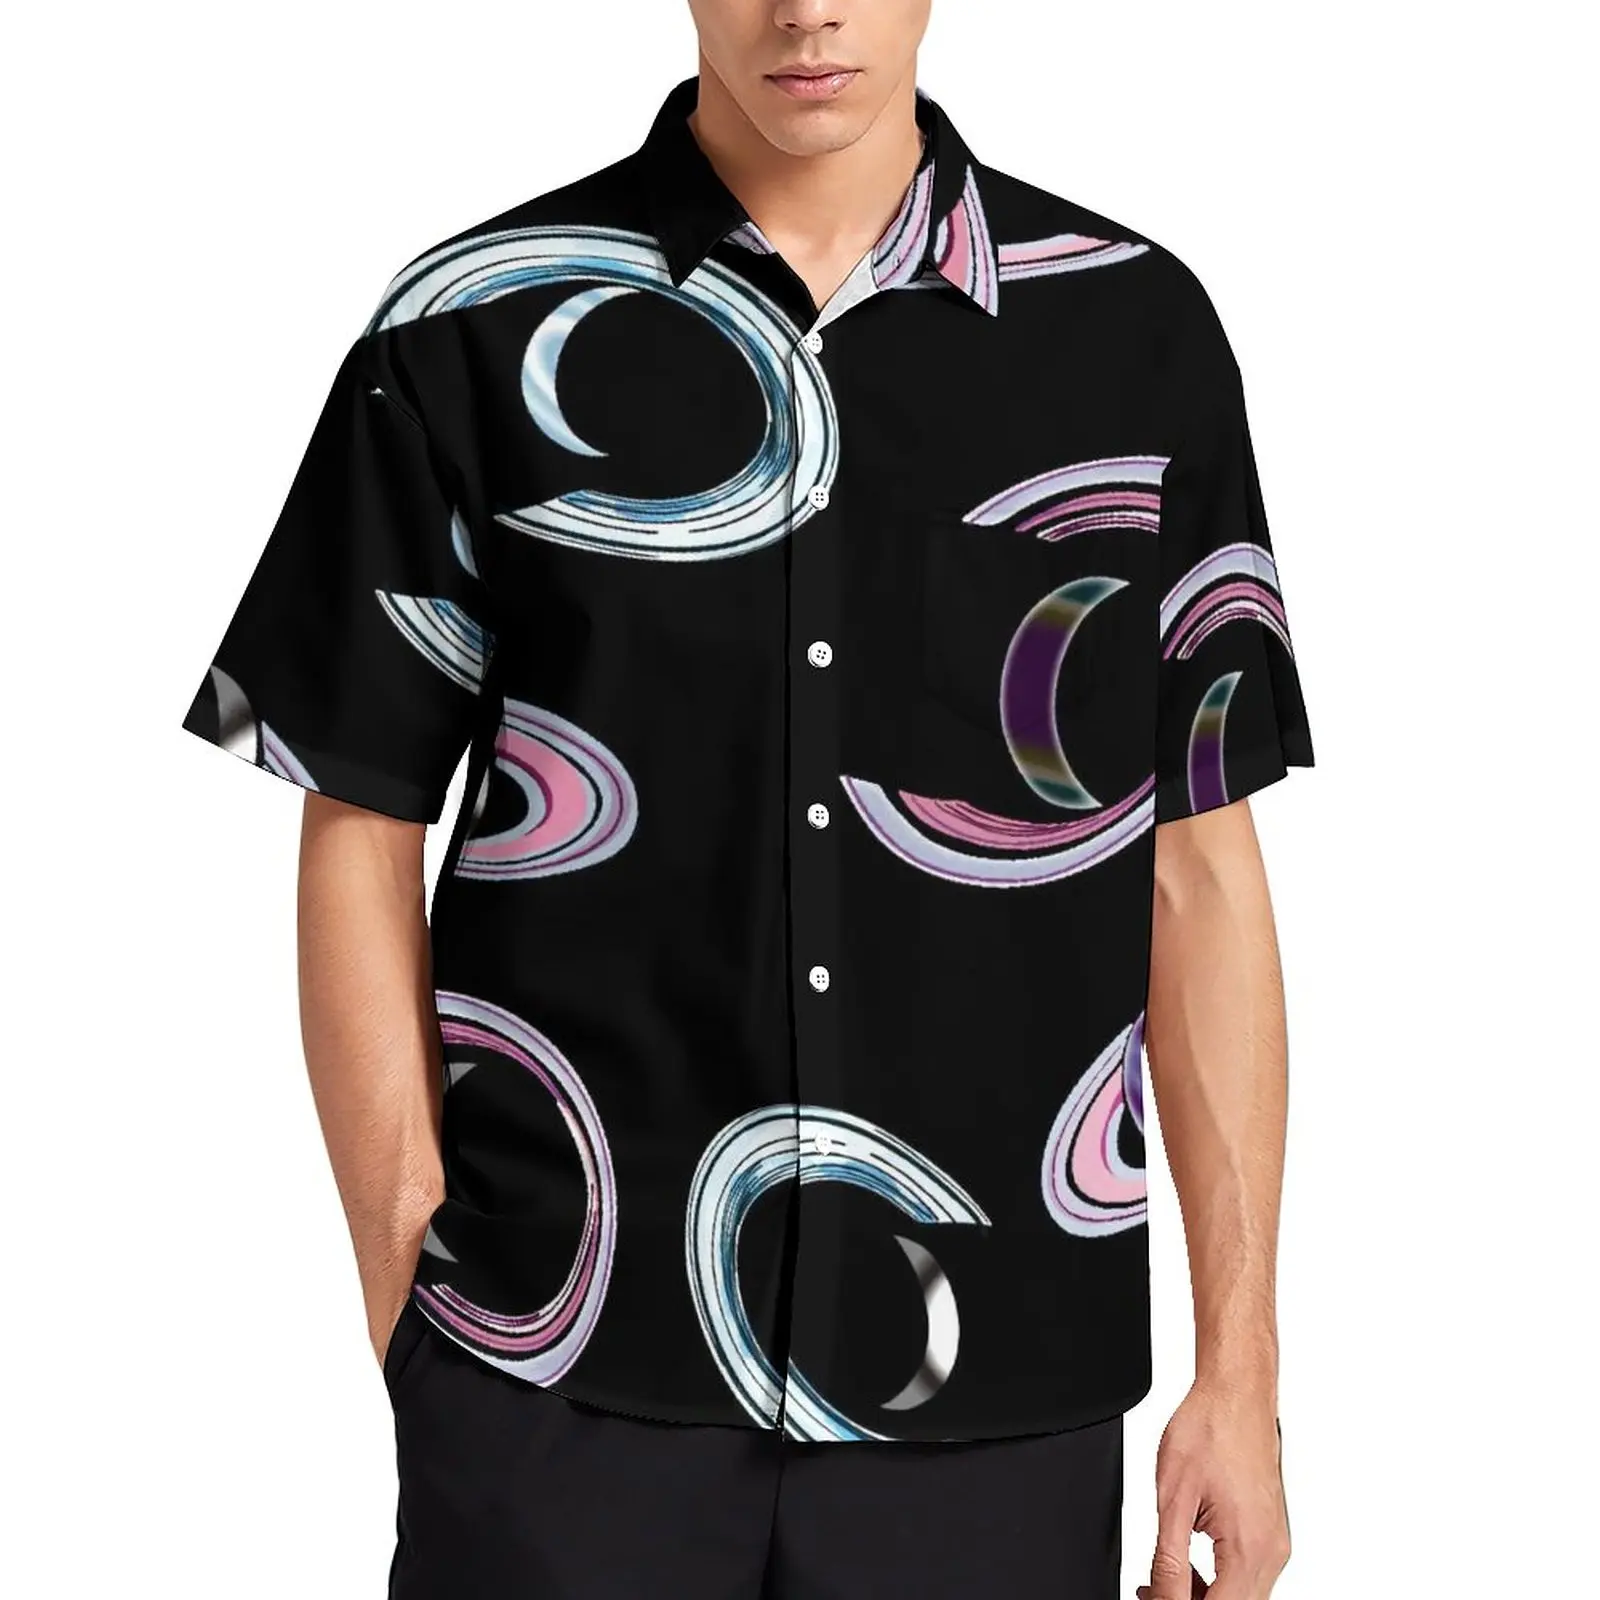 

Рубашка мужская свободного покроя с металлическим рисунком, цветная повседневная с короткими рукавами, в винтажном стиле, для отпуска, с гавайским рисунком